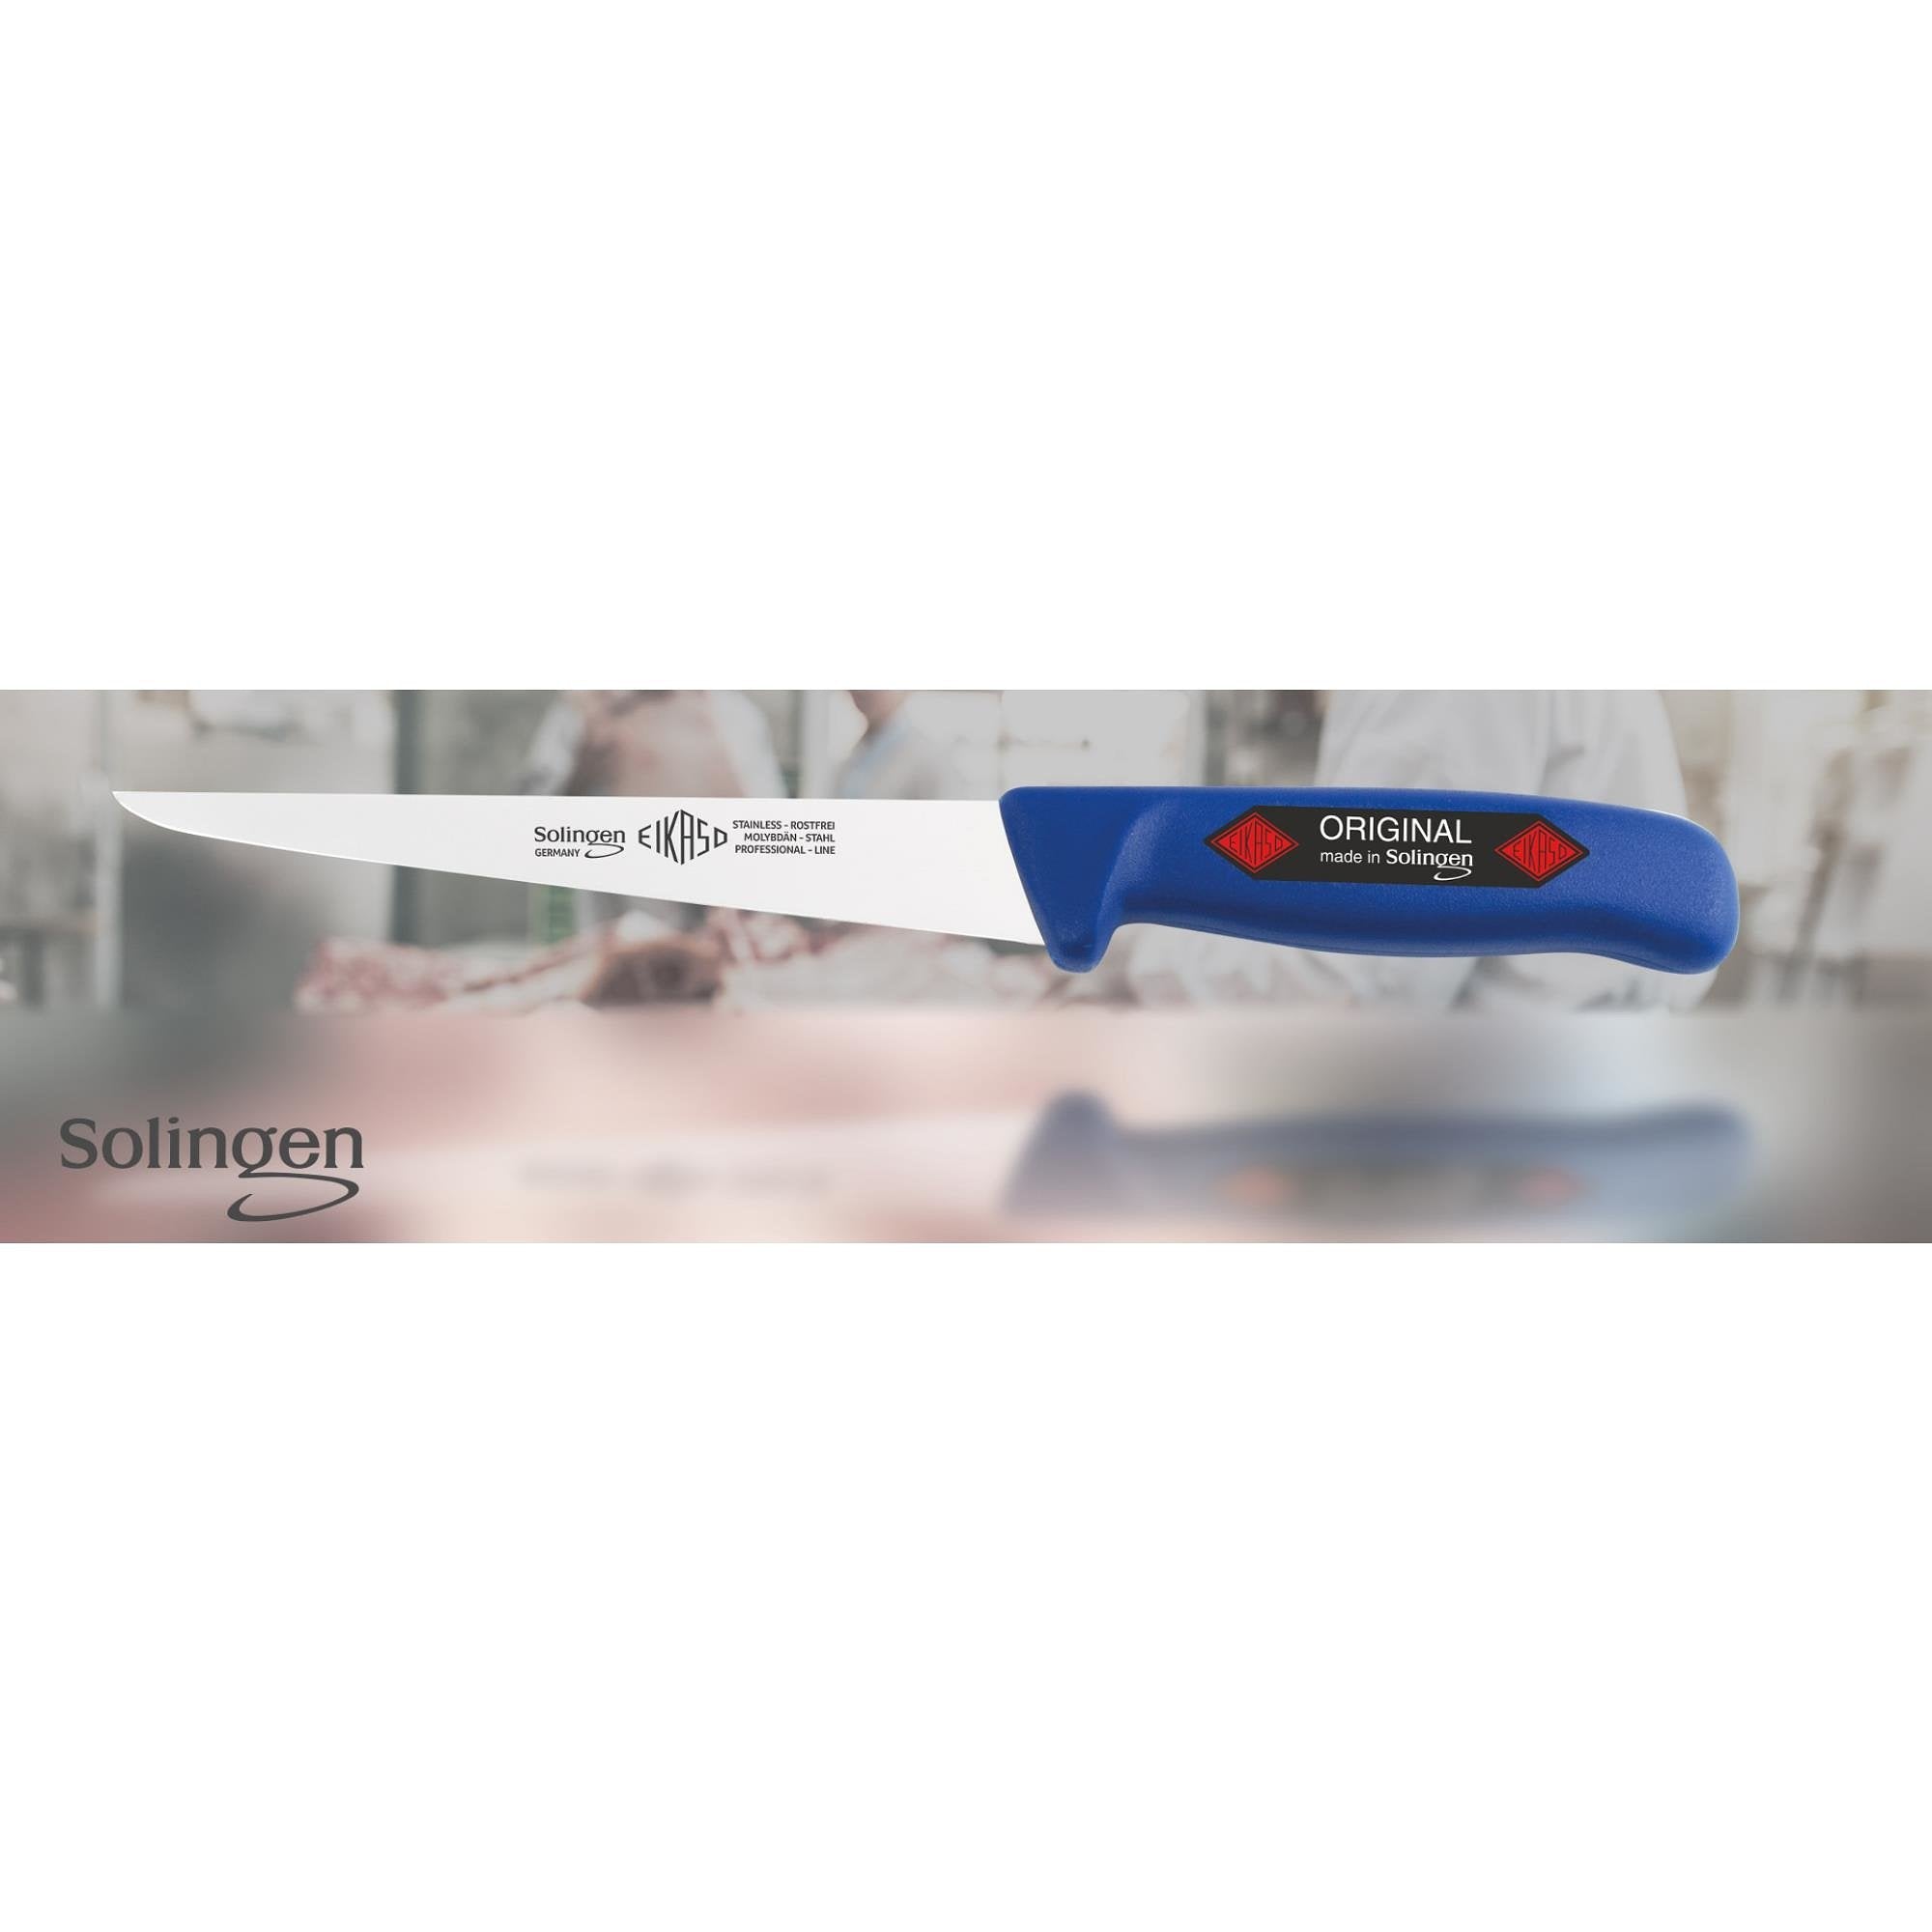 Eikaso Solingen Flexibel Fileermes 18 cm - Ideaal voor Kabeljauw - Ergonomisch Blauw Handvat